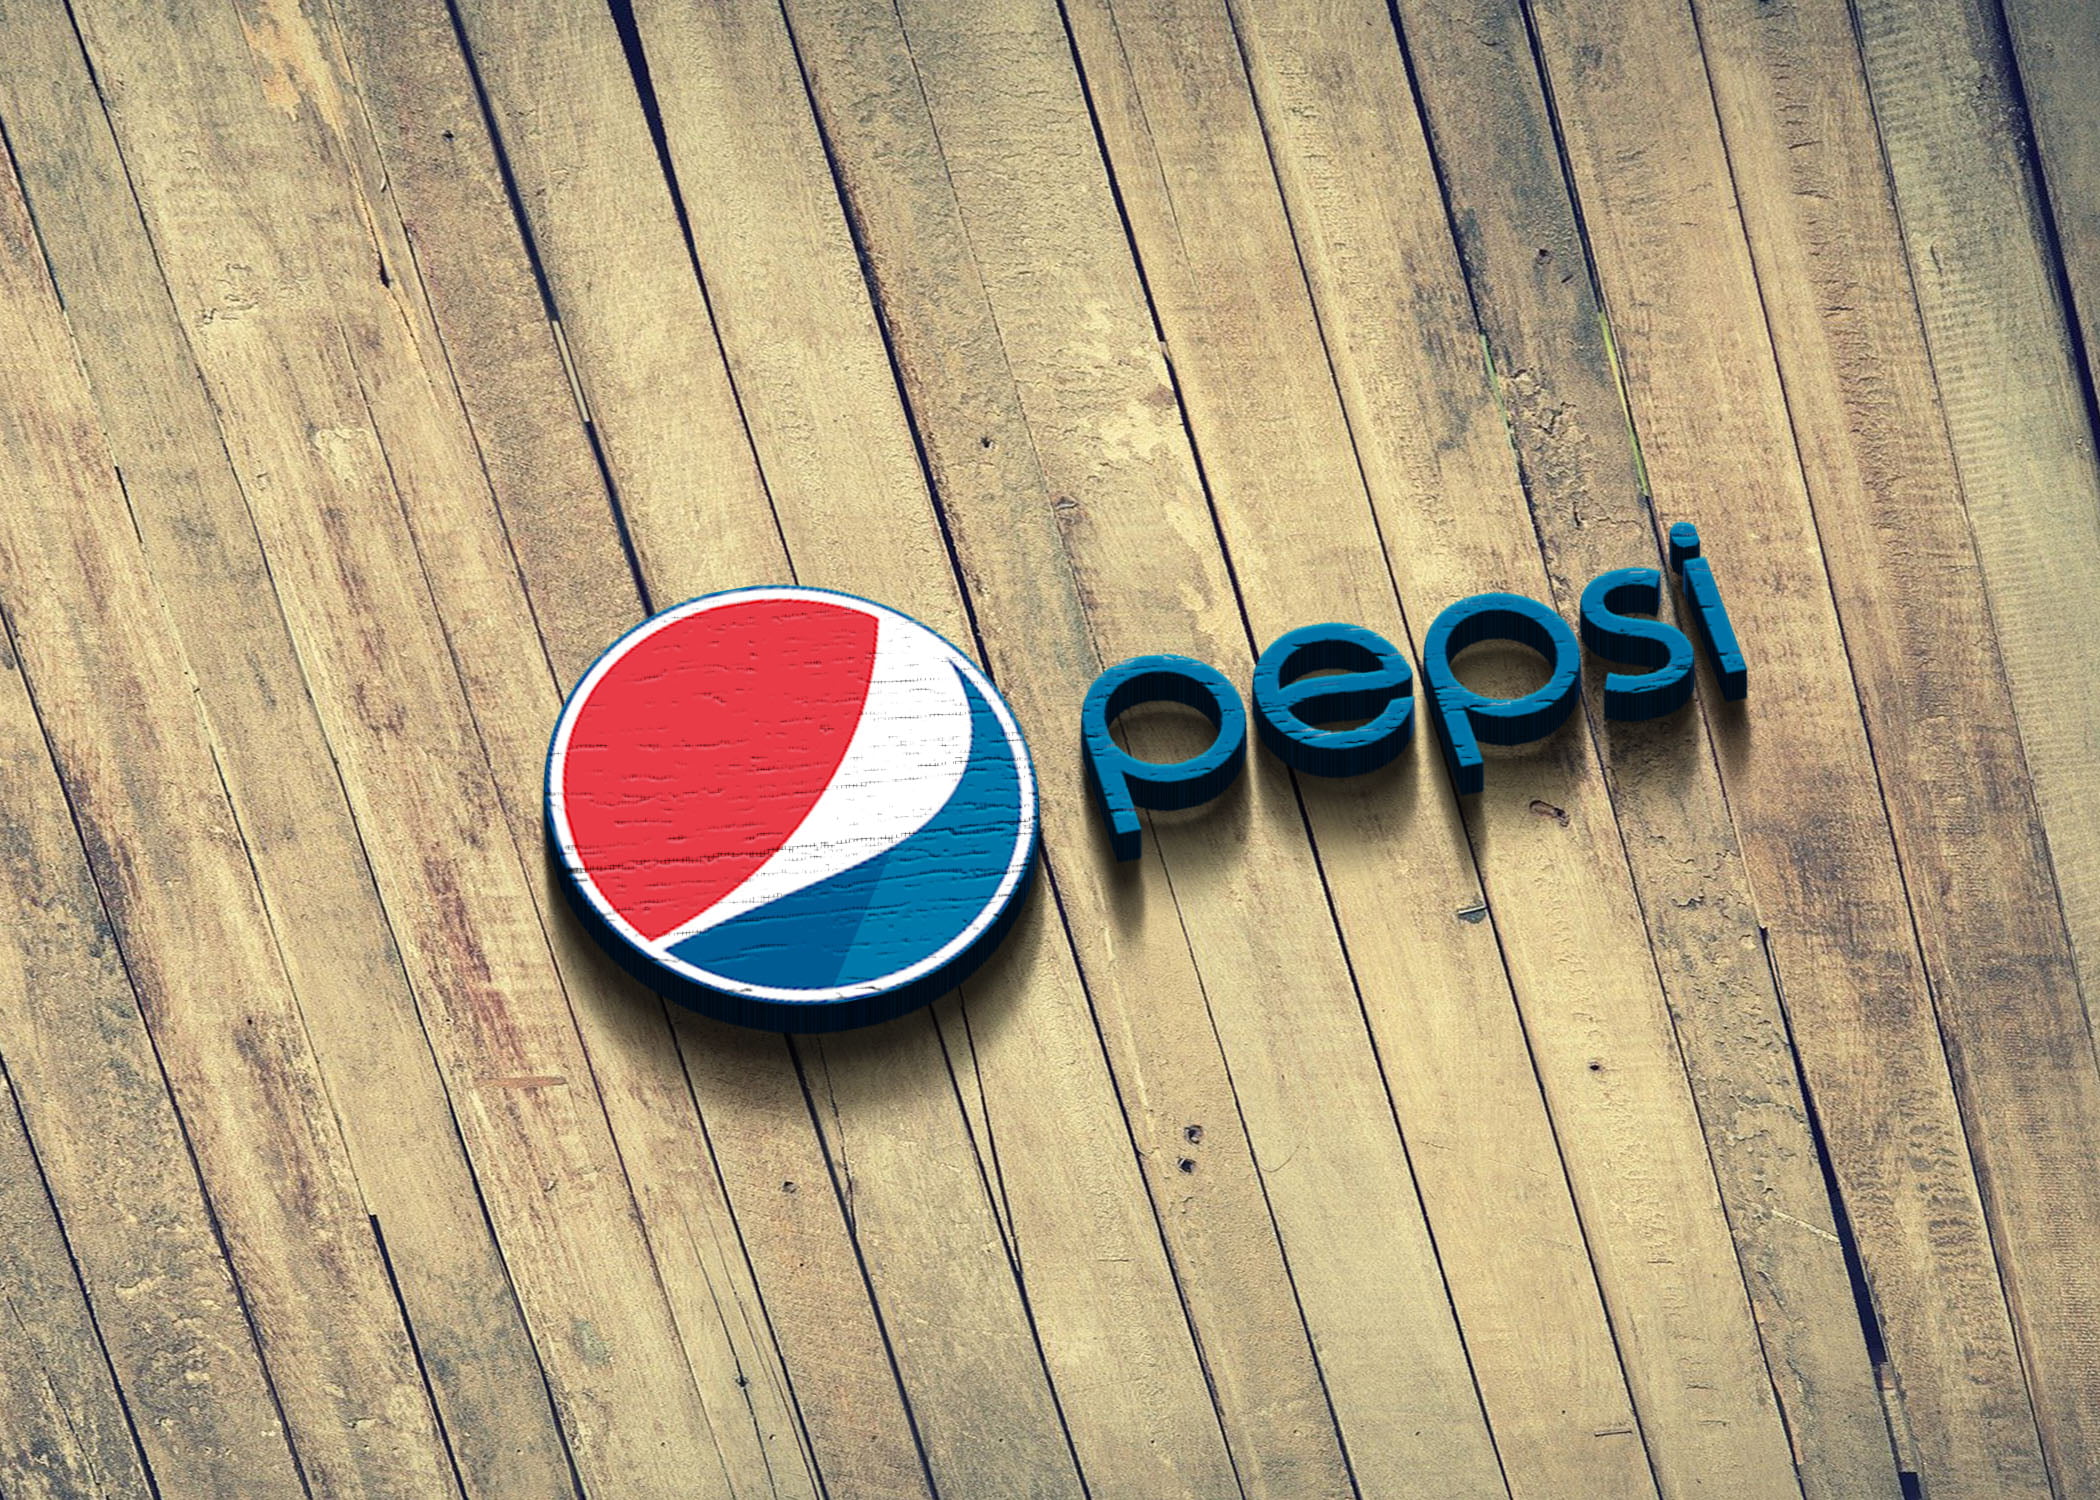 Pepsi logo on 3d wood mockup